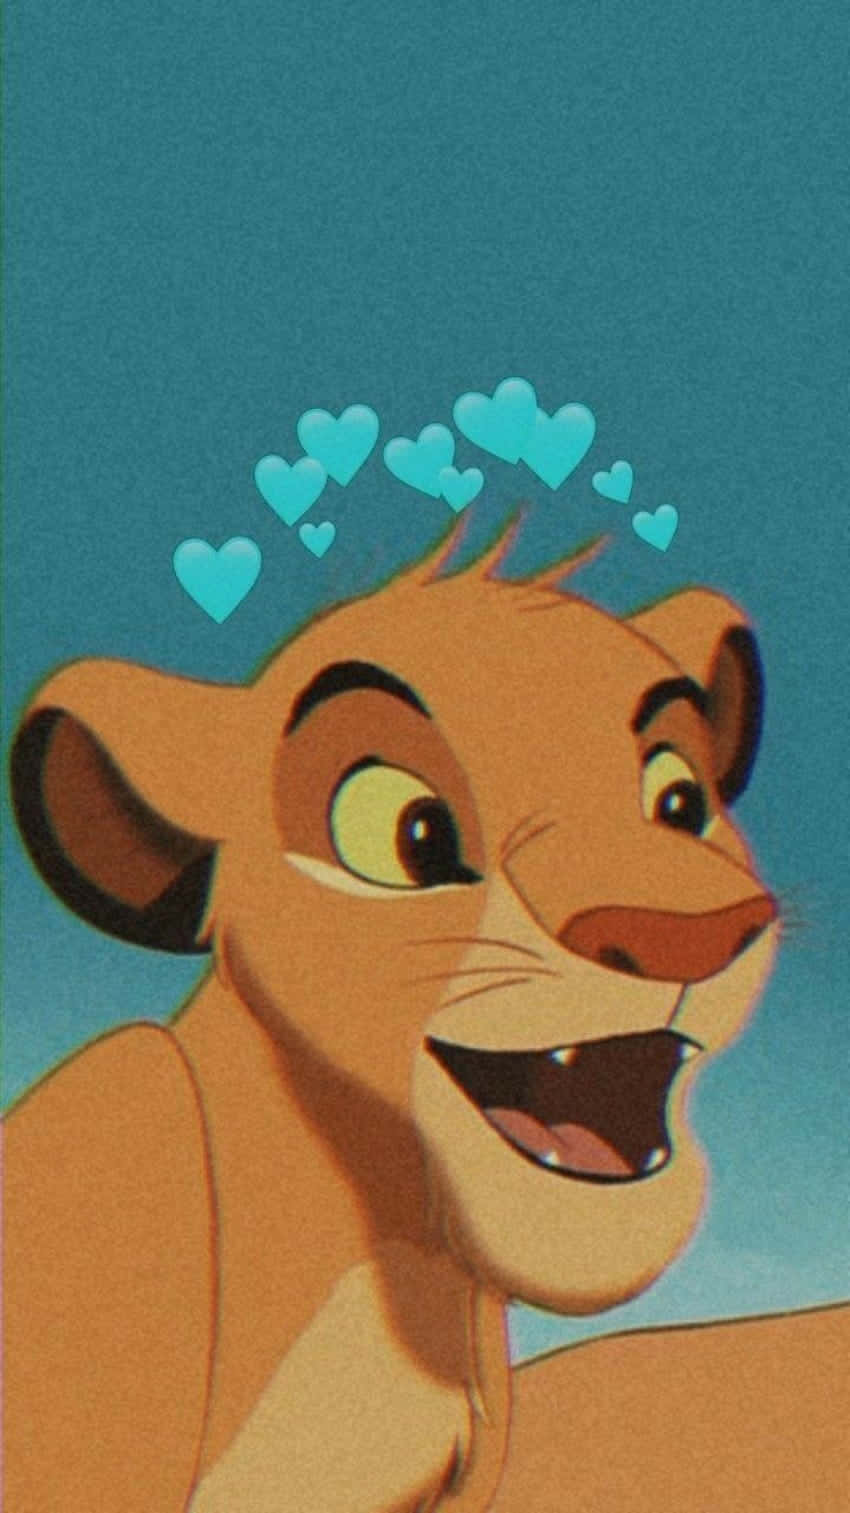 Lion Head Cute Matching Best Friend Wallpaper Idea Wallpaper